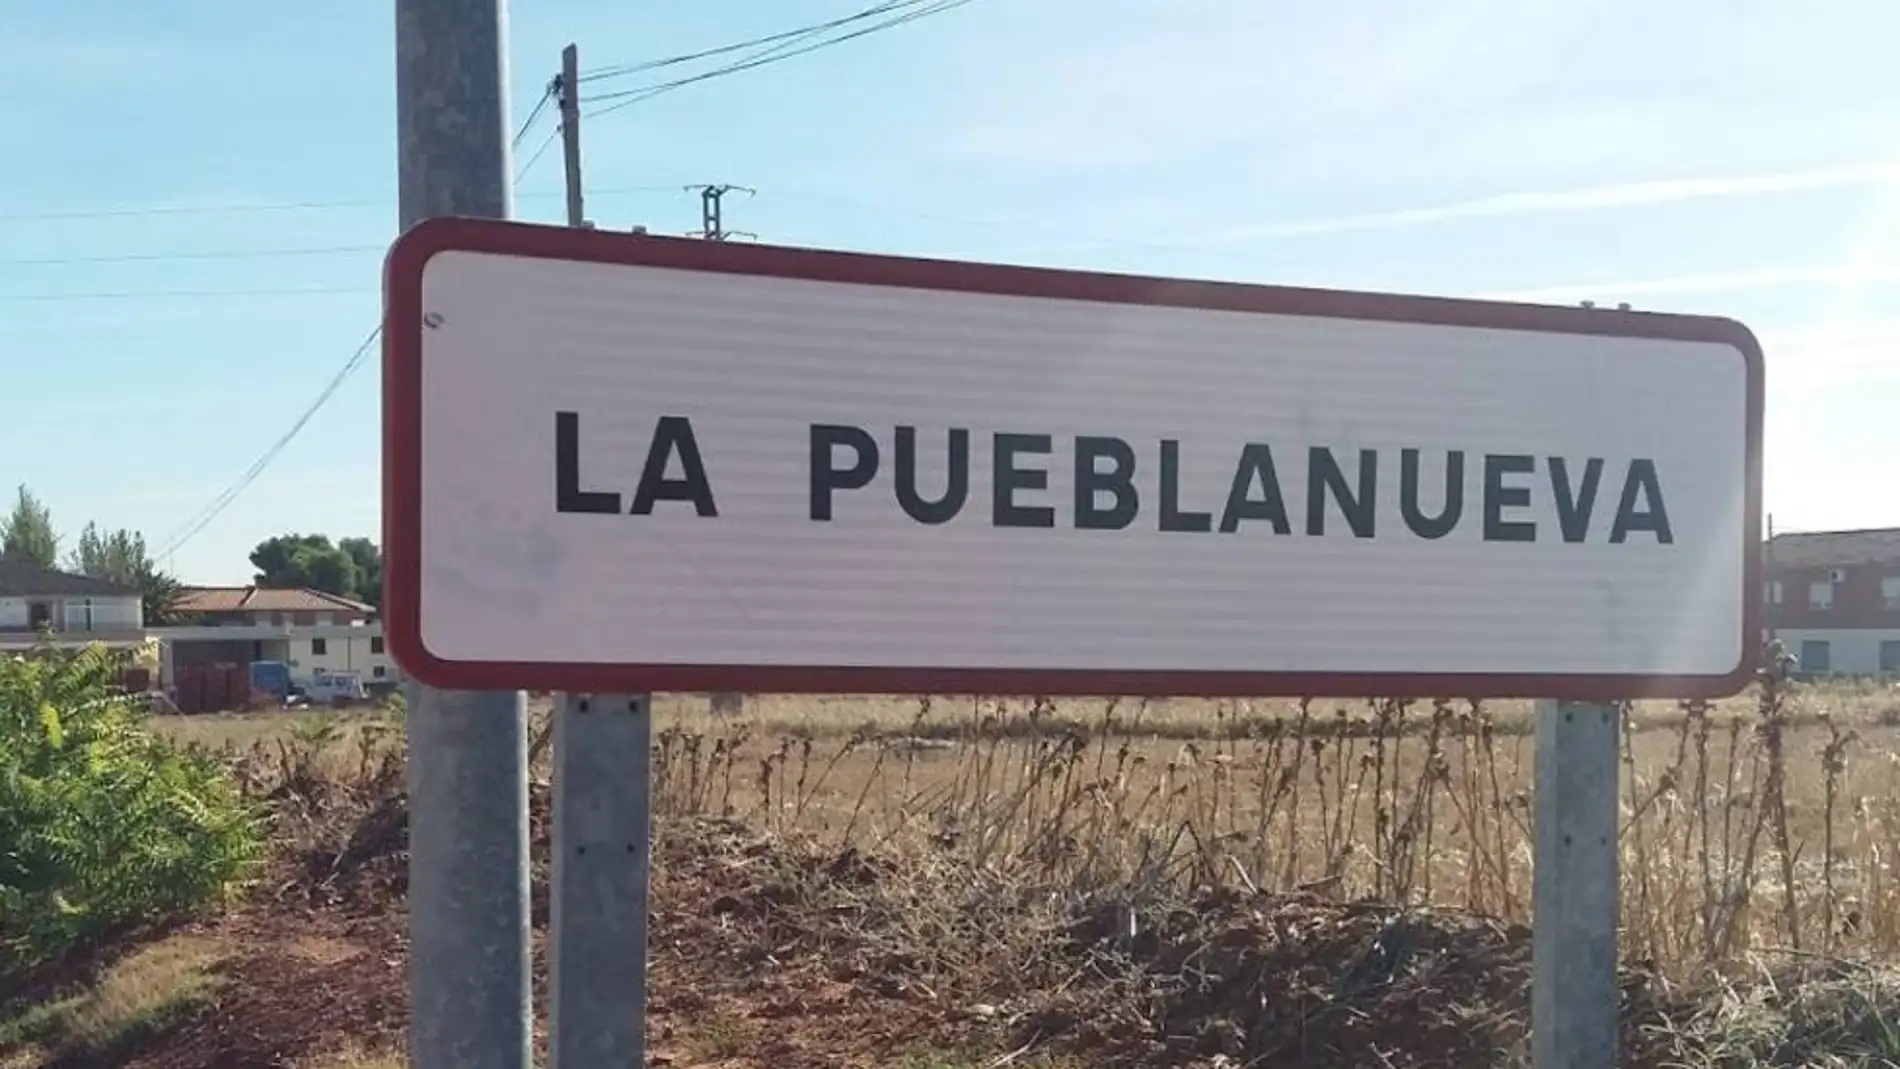 La Guardia Civil detiene a otra persona relacionada con el homicidio de La Pueblanueva